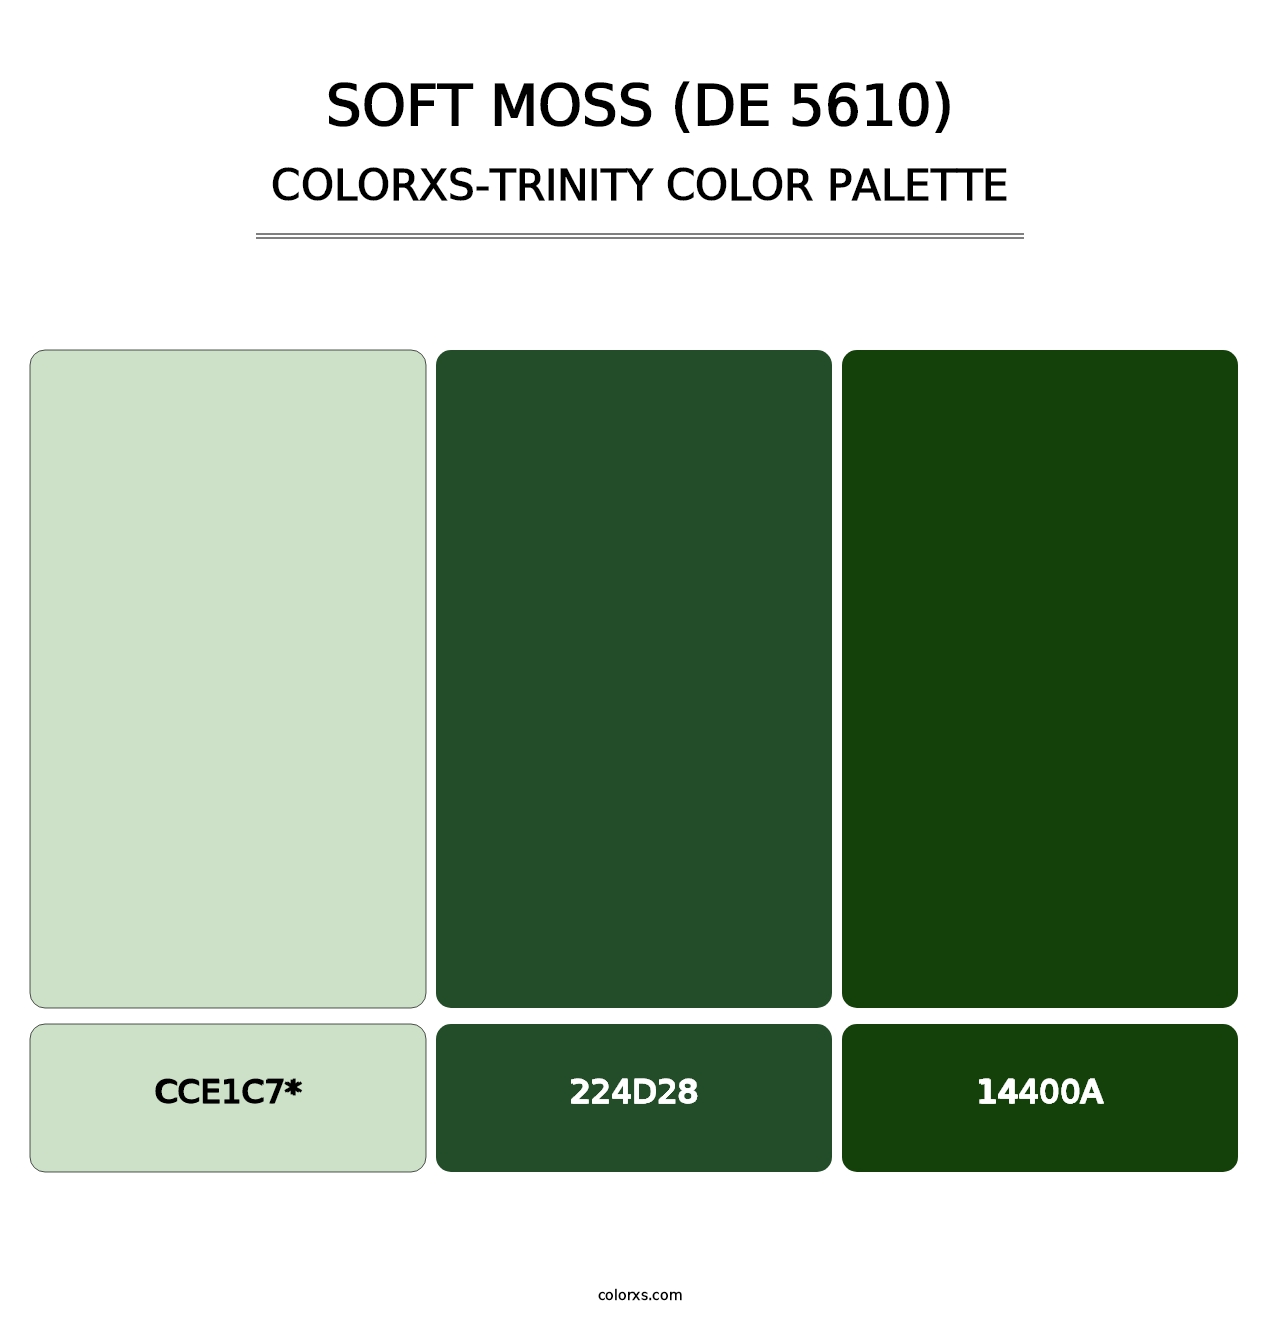 Soft Moss (DE 5610) - Colorxs Trinity Palette